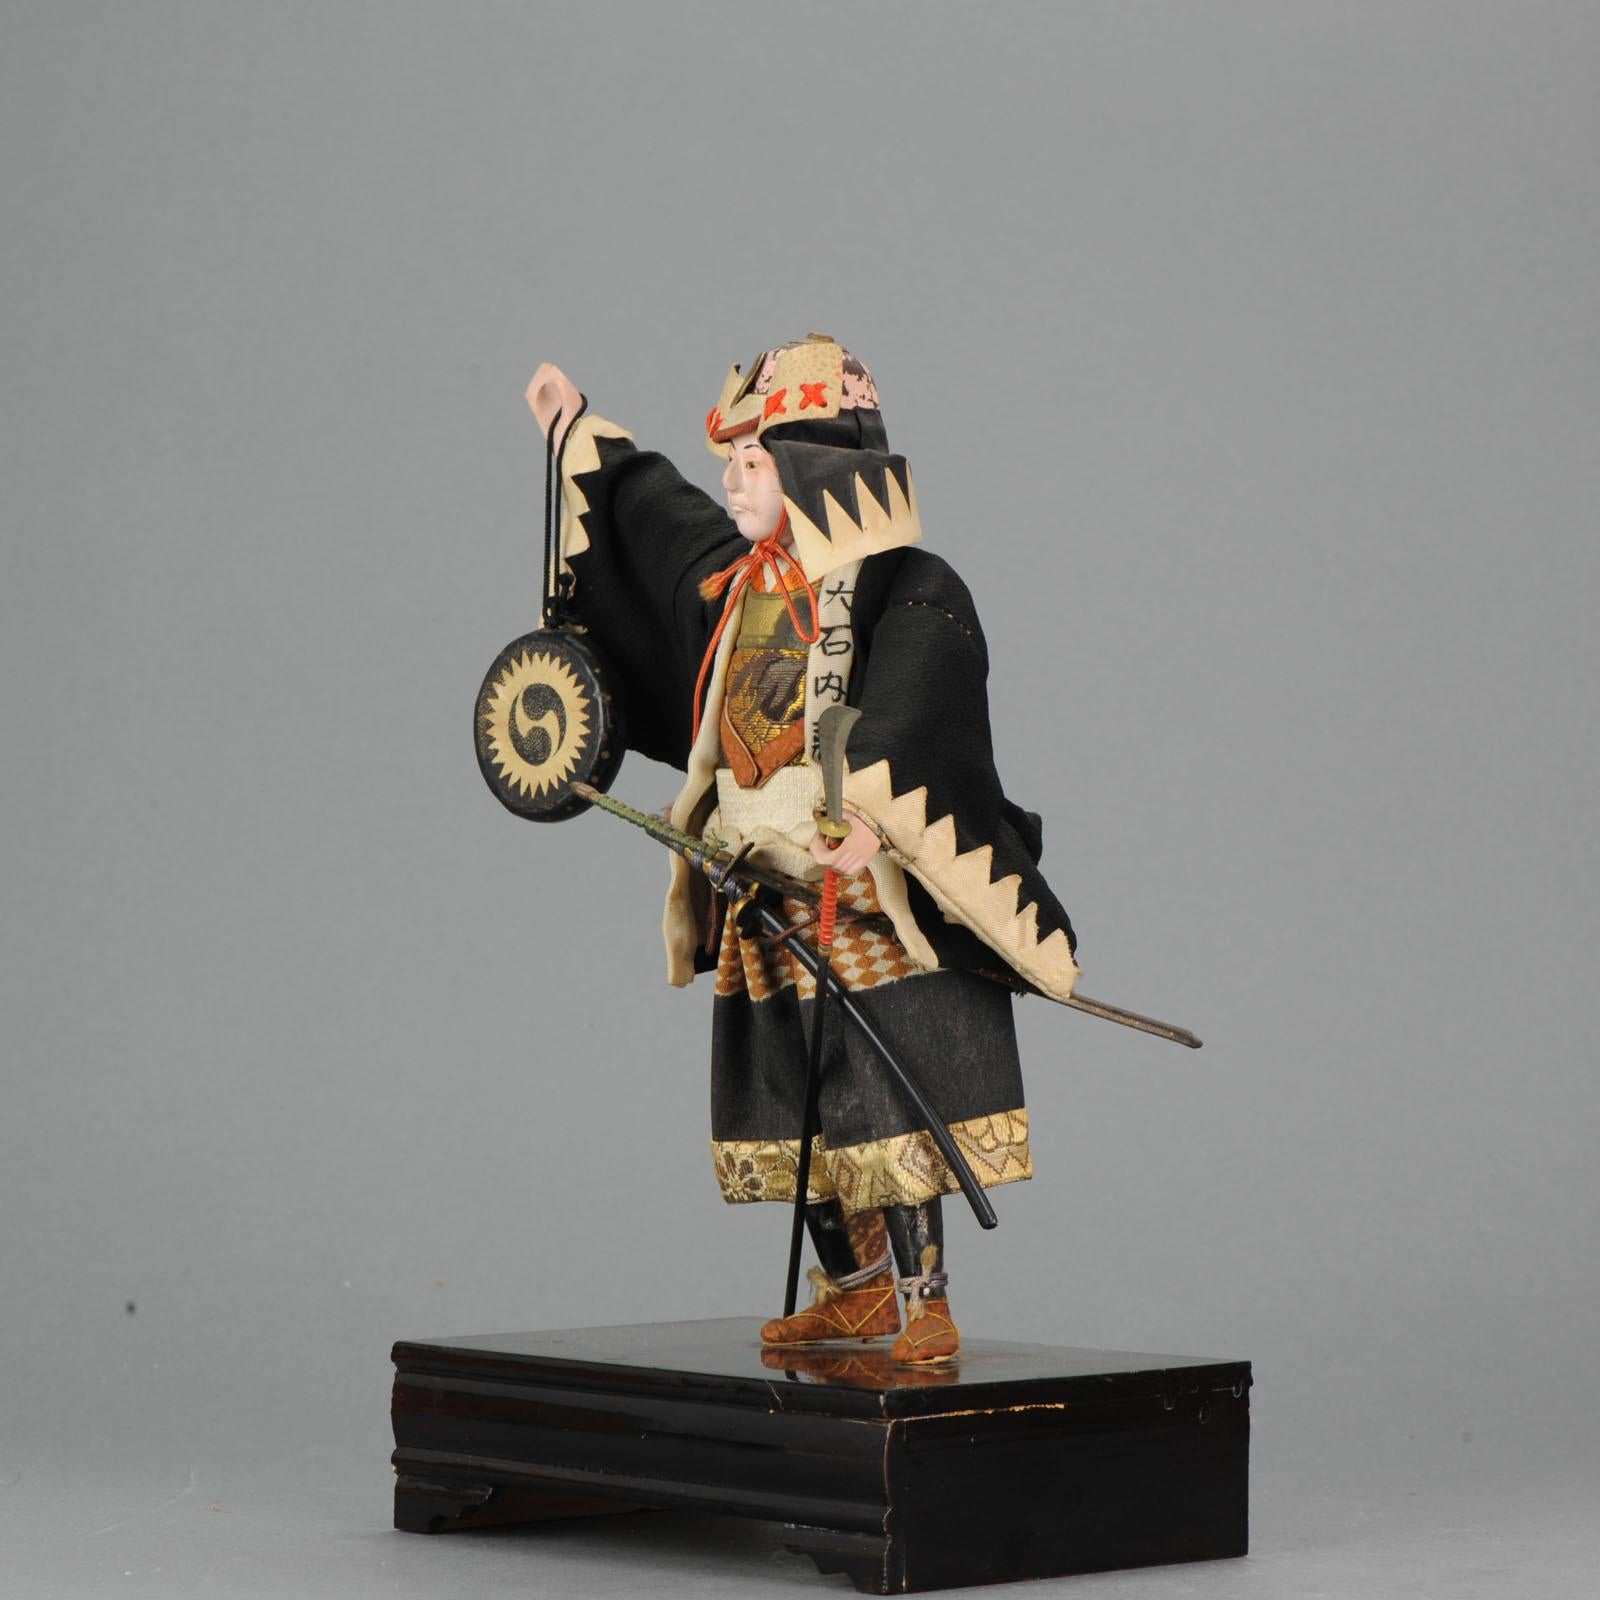 Große Ningyo-Puppe.

Mit Label

Bedingung
Gesamtzustand sehr gut. Größe 265cm

Zeitraum
Meiji-Periode (1867-1912)
Taisho-Periode (1912-1926).